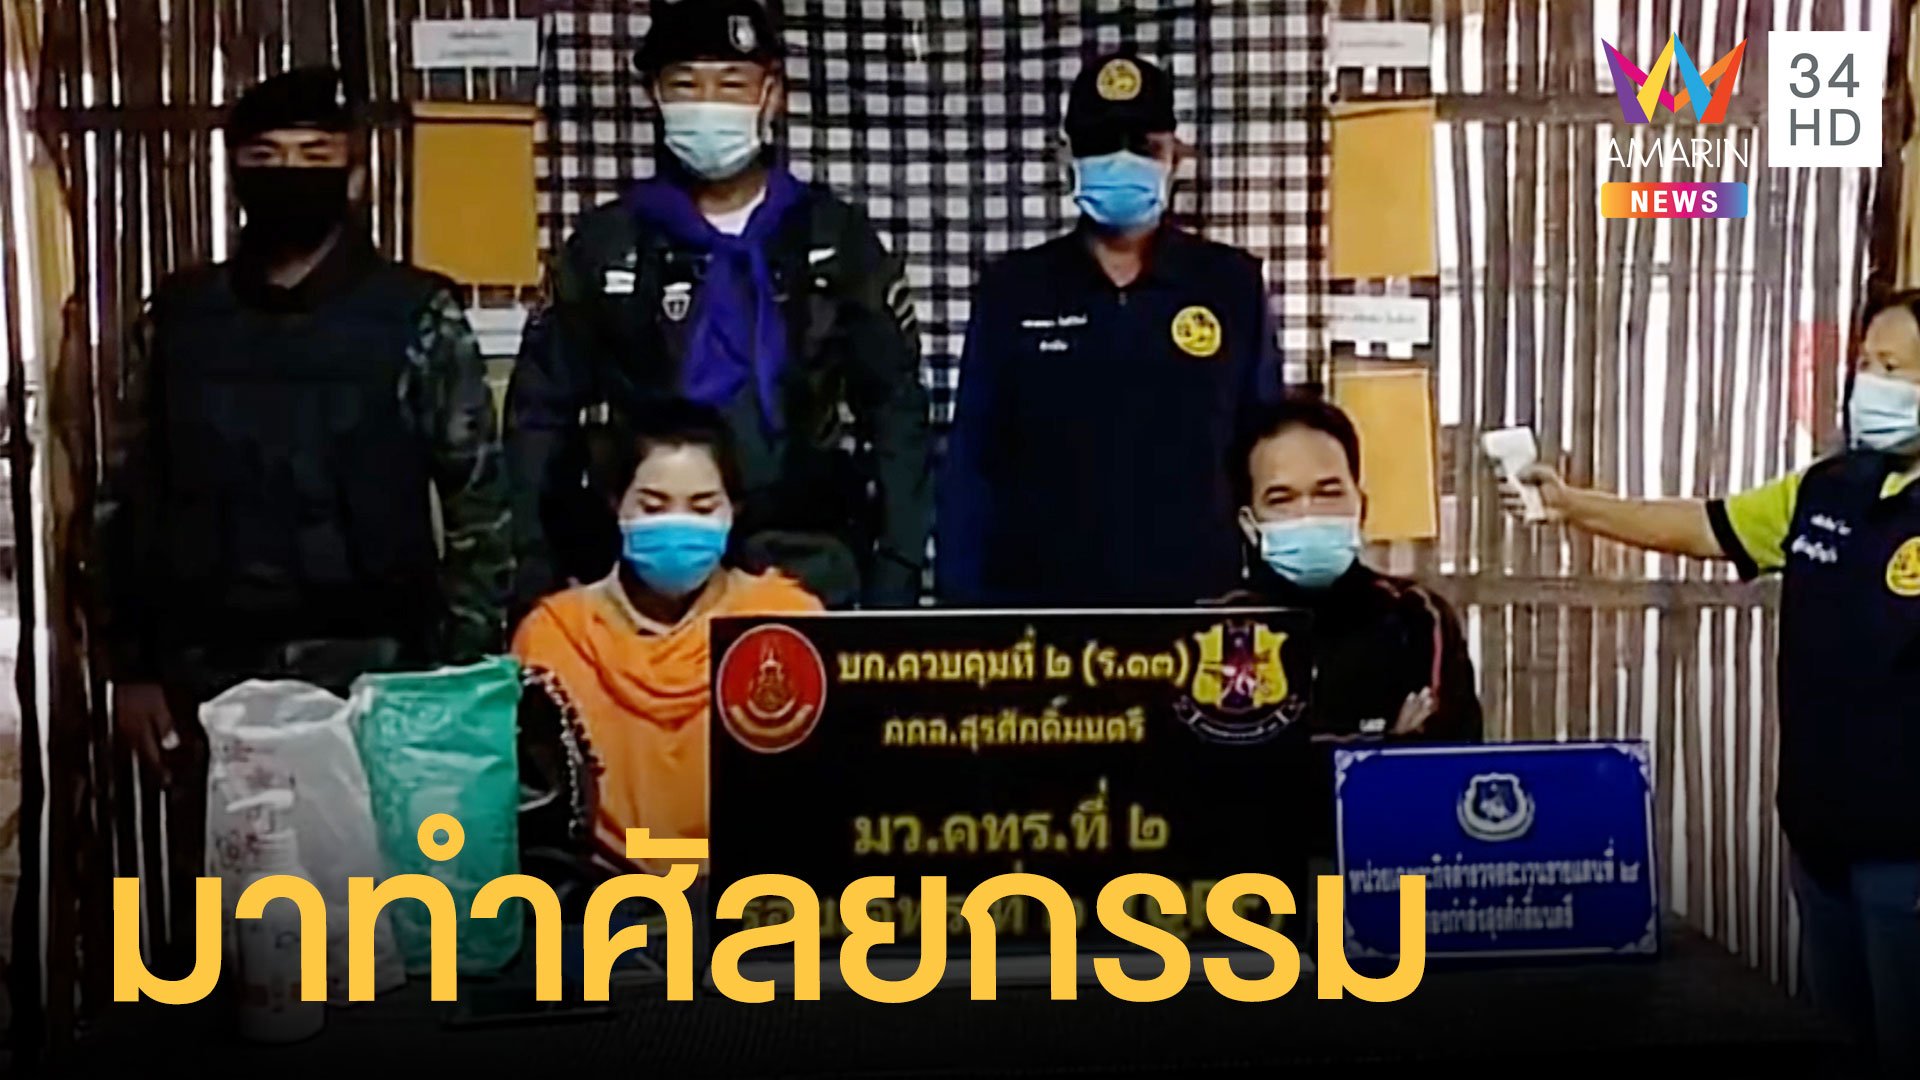 รวบหนุ่มสาวลาวนั่งเรือข้ามแม่น้ำโขง บอกเข้าไทยมาทำศัลยกรรม | ข่าวอรุณอมรินทร์ | 10 ธ.ค. 63 | AMARIN TVHD34